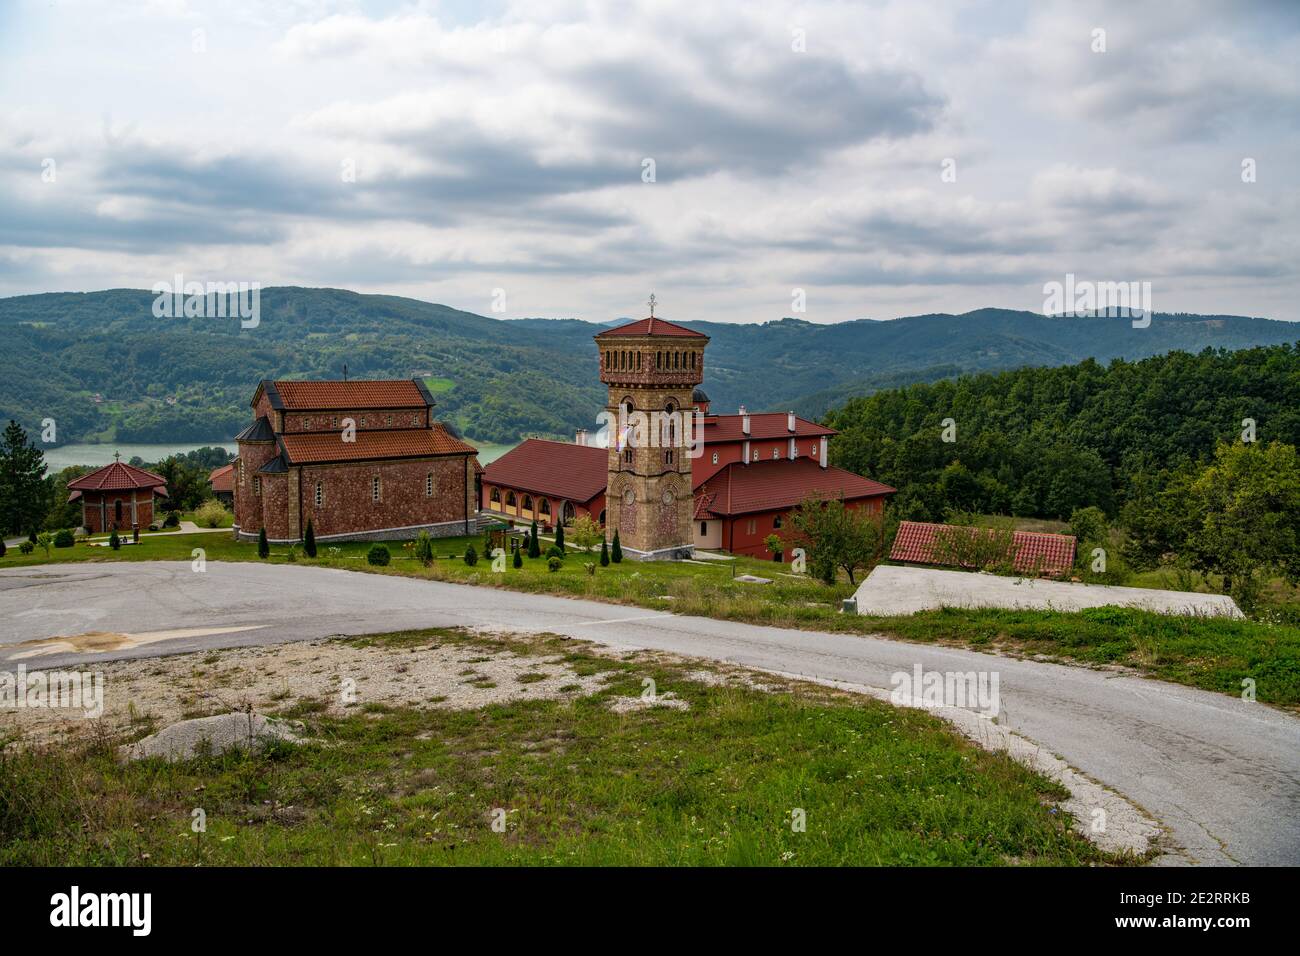 Le monastère de Rujno a été établi en 1537 dans le monastère de Saint George Rujan. C'était l'une des plus anciennes imprimeries des Balkans. Banque D'Images